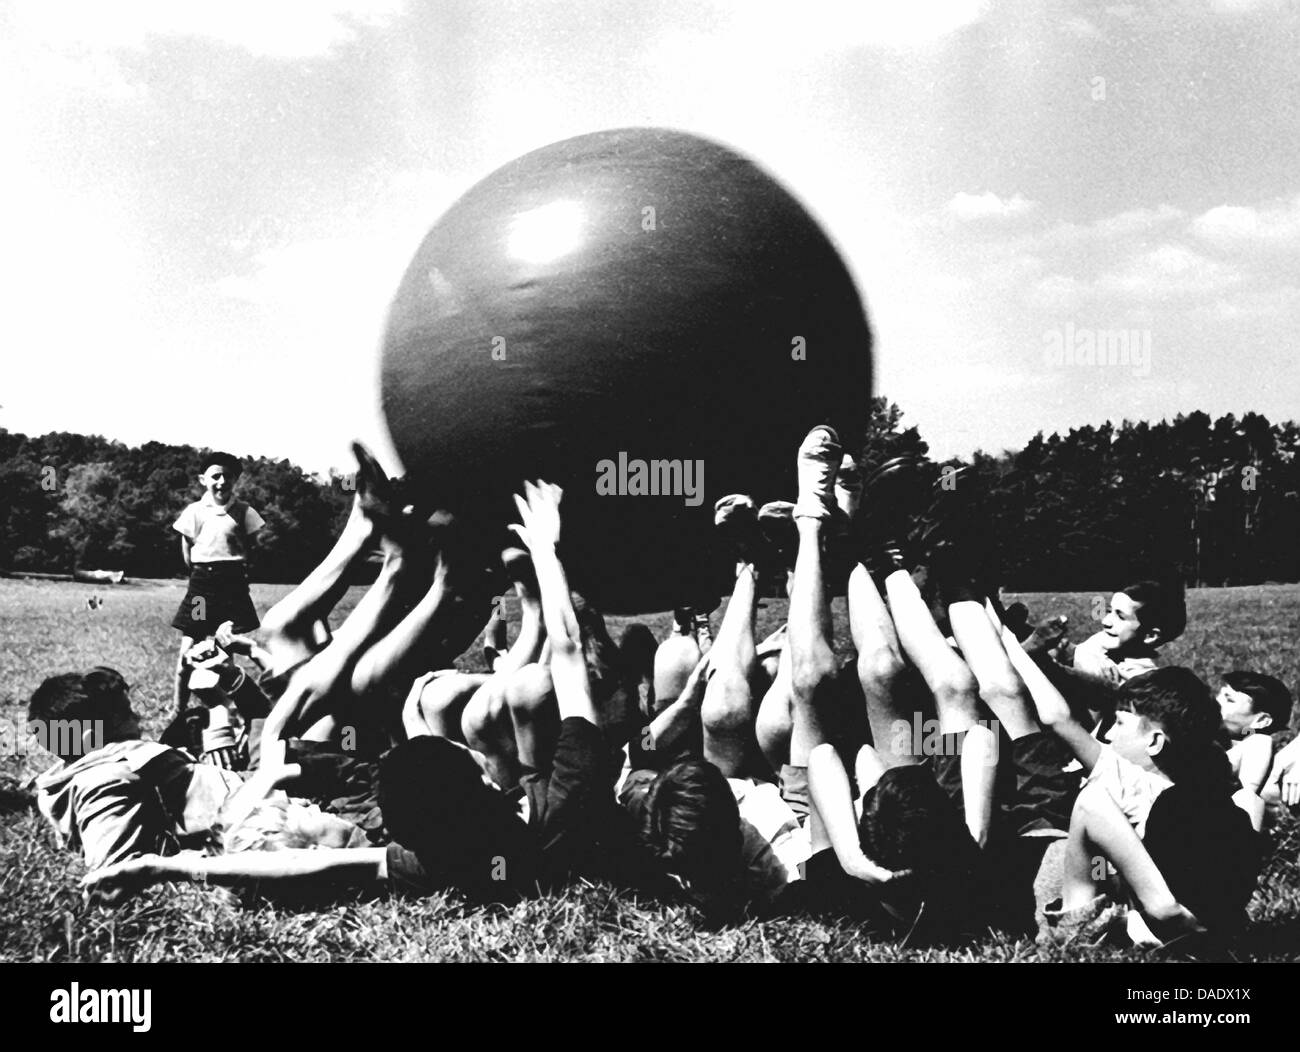 France 1936, les enfants jouant avec big ball. Image by photographe Fred Stein (1909-1967) qui a émigré à partir de 1933 l'Allemagne nazie pour la France et enfin aux États-Unis. Banque D'Images